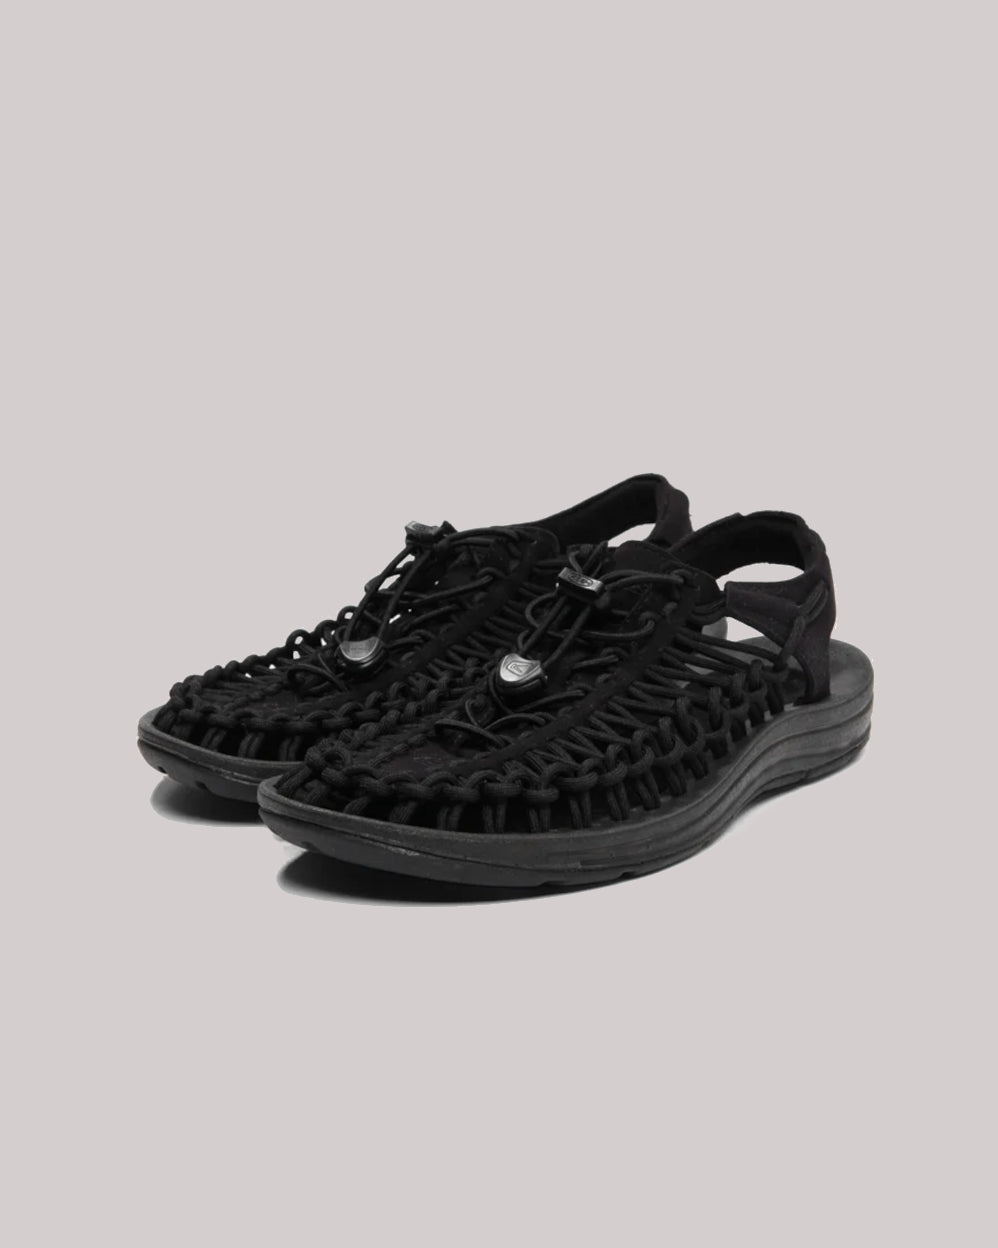 Keen Black Uneek Trekking Sandals